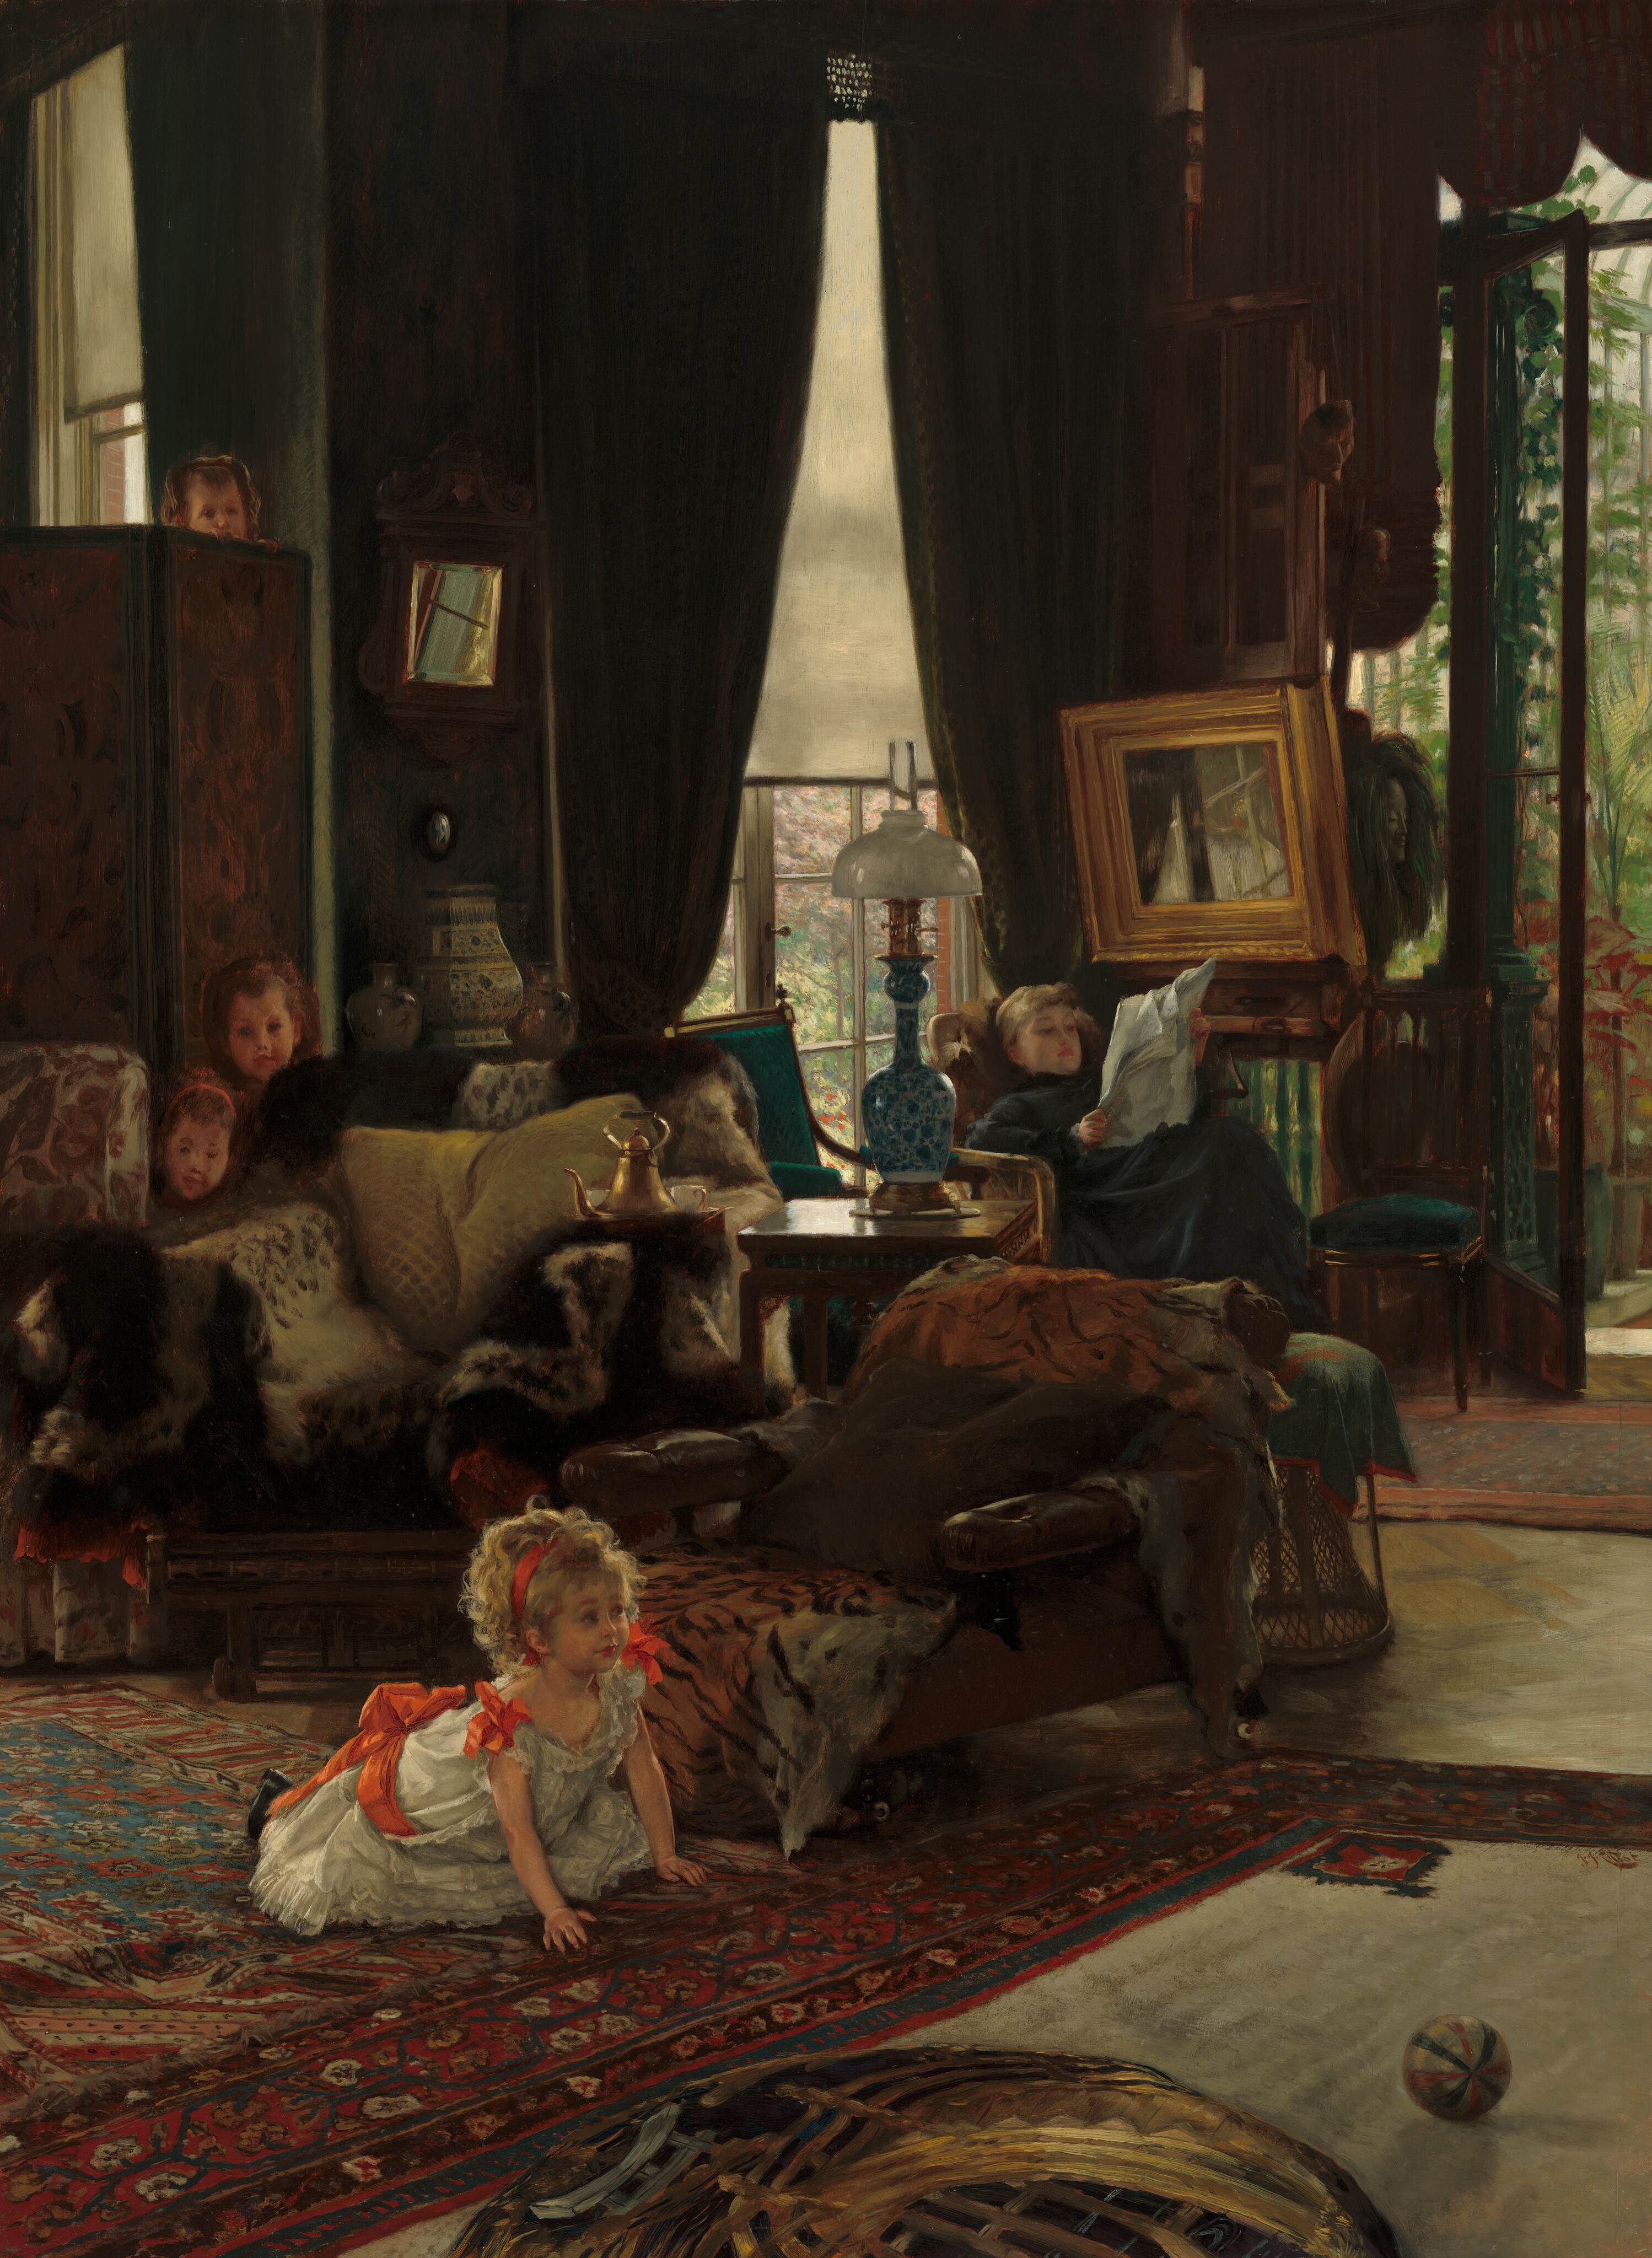 Zabawa w chowanego by James Tissot - ok. 1877 - 73,4 x 53,9 cm 